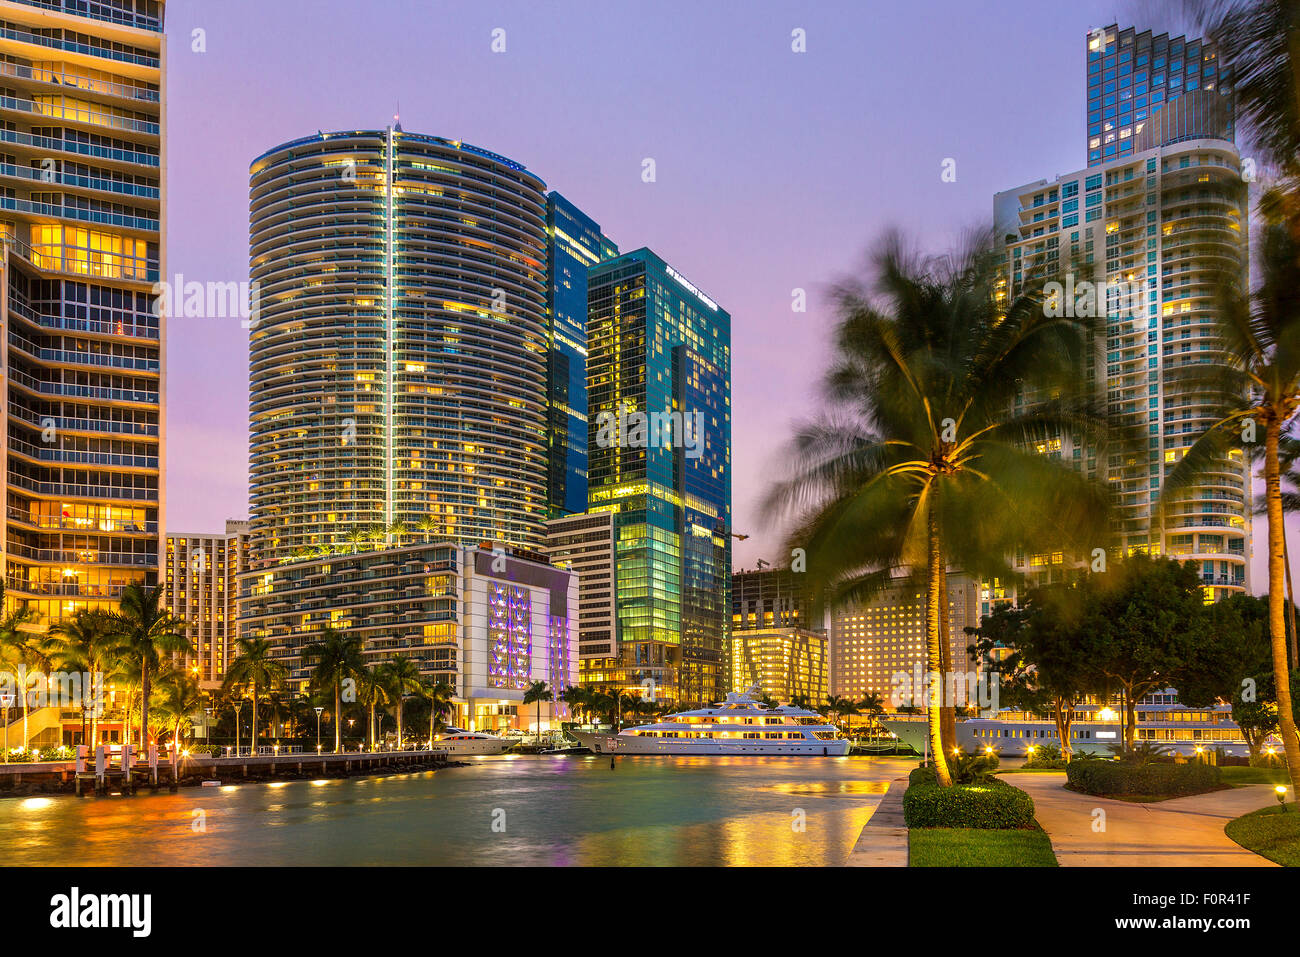 Centro de Miami, Brickell Key en la noche Foto de stock